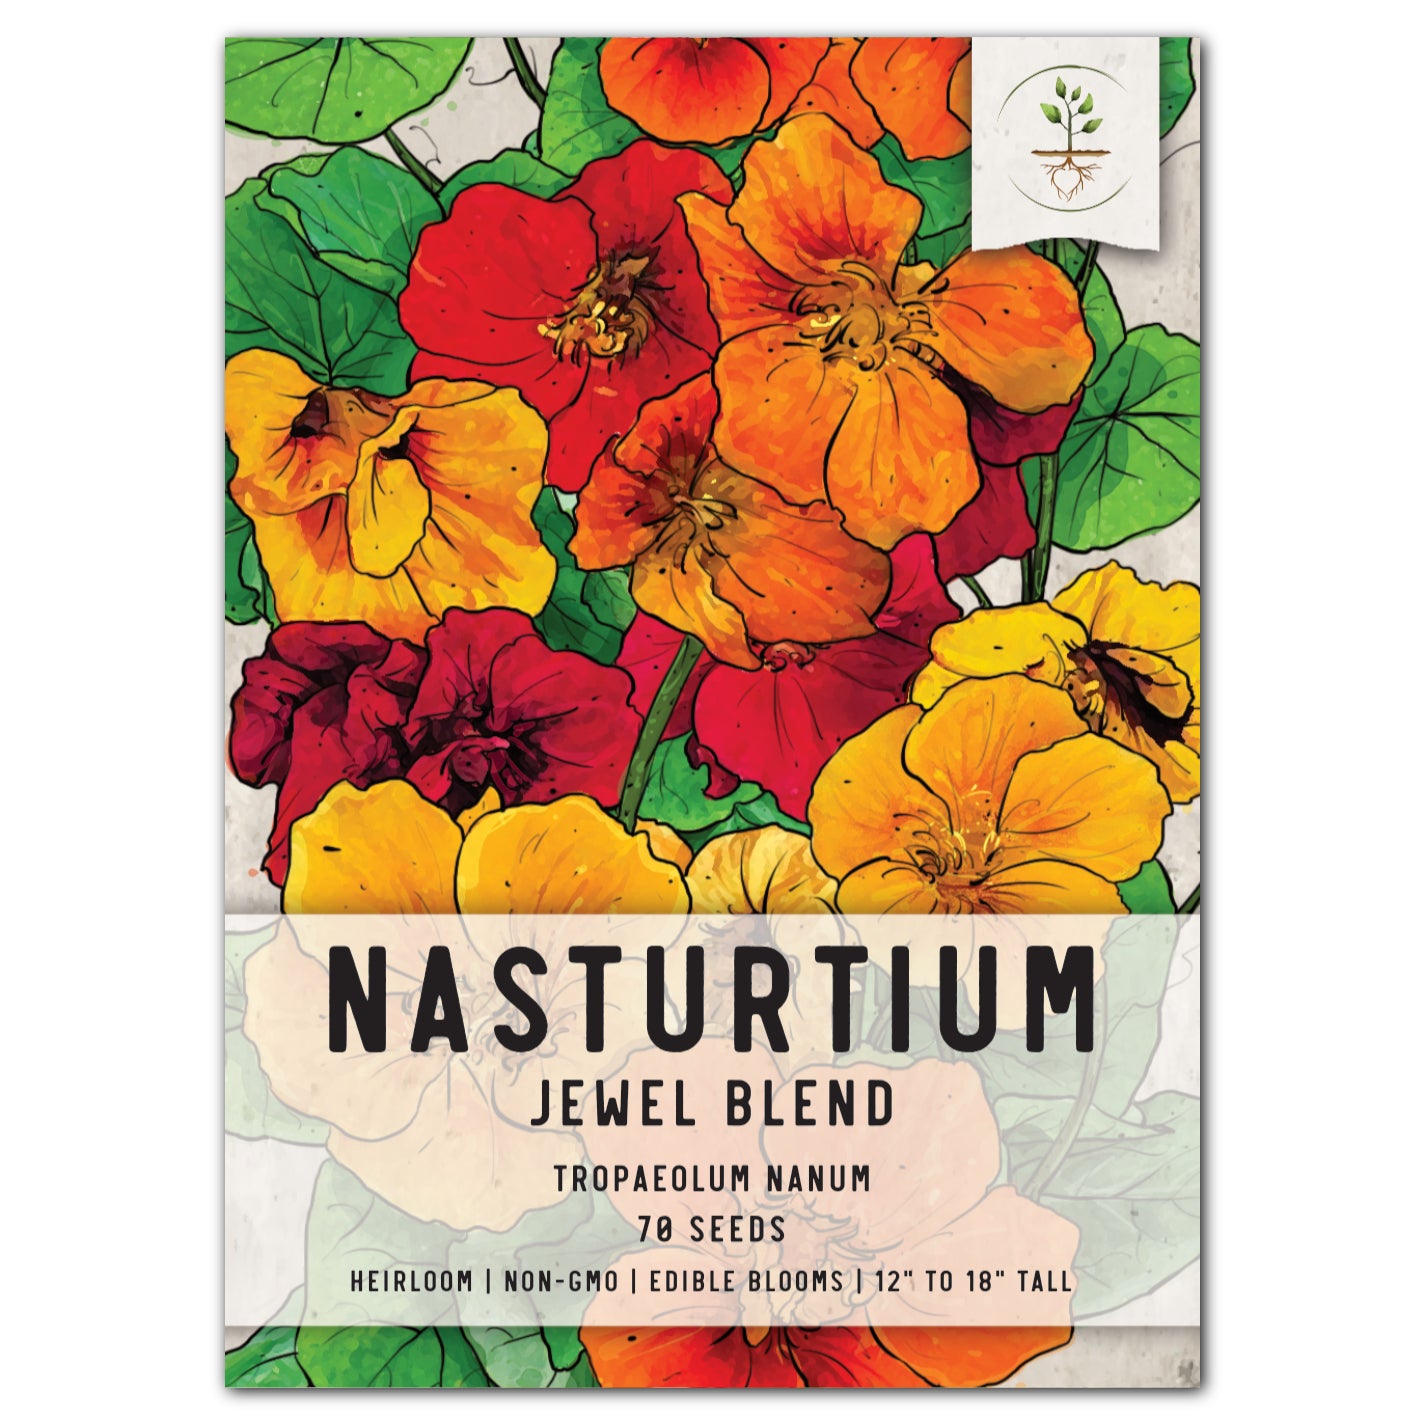 Jewel Mixture Nasturtium Seeds For Planting (Tropaeolum nanum)